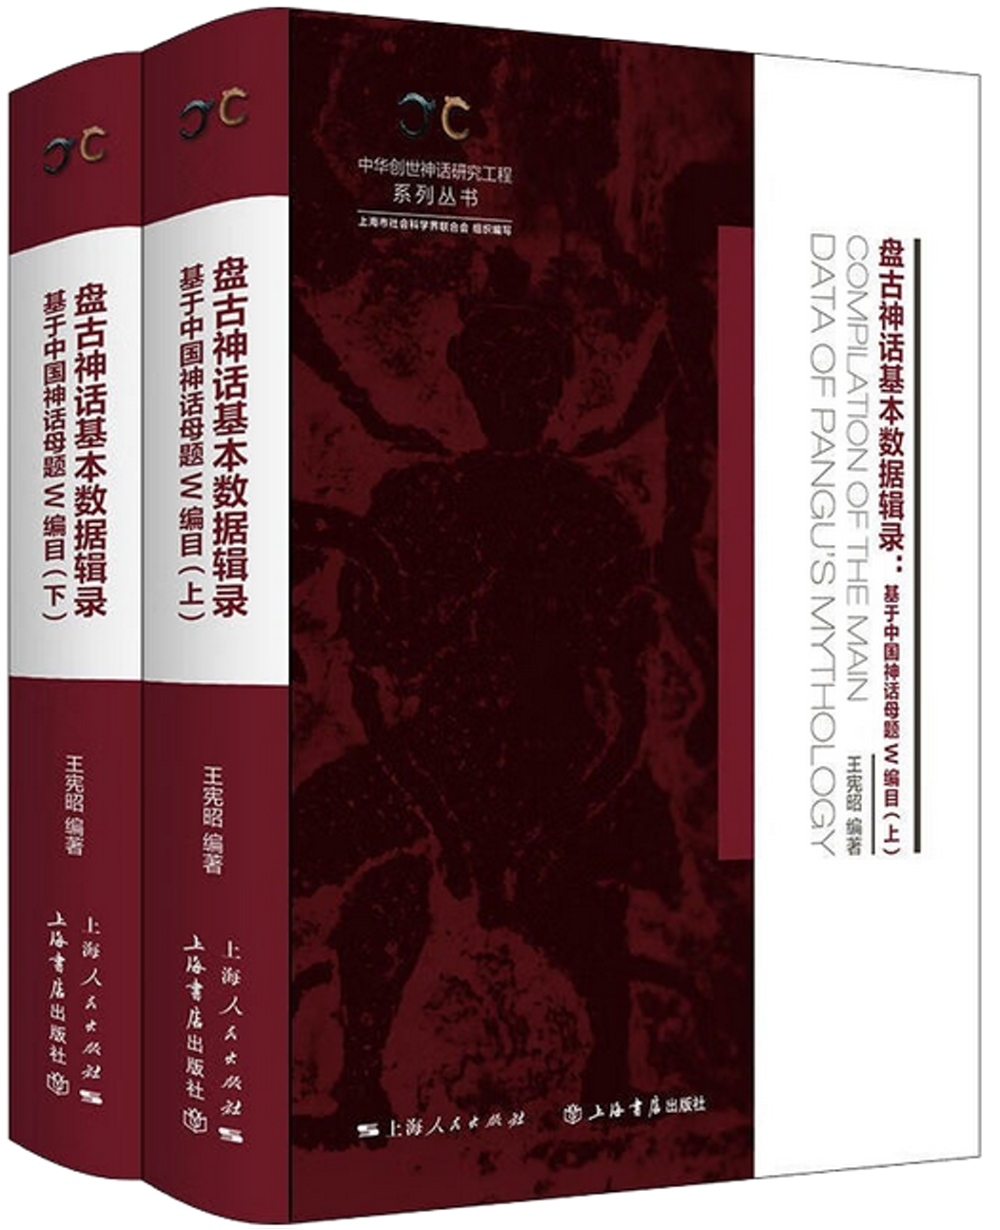 盤古神話基本數據輯錄：基於中國神話母題W編目(全二冊)